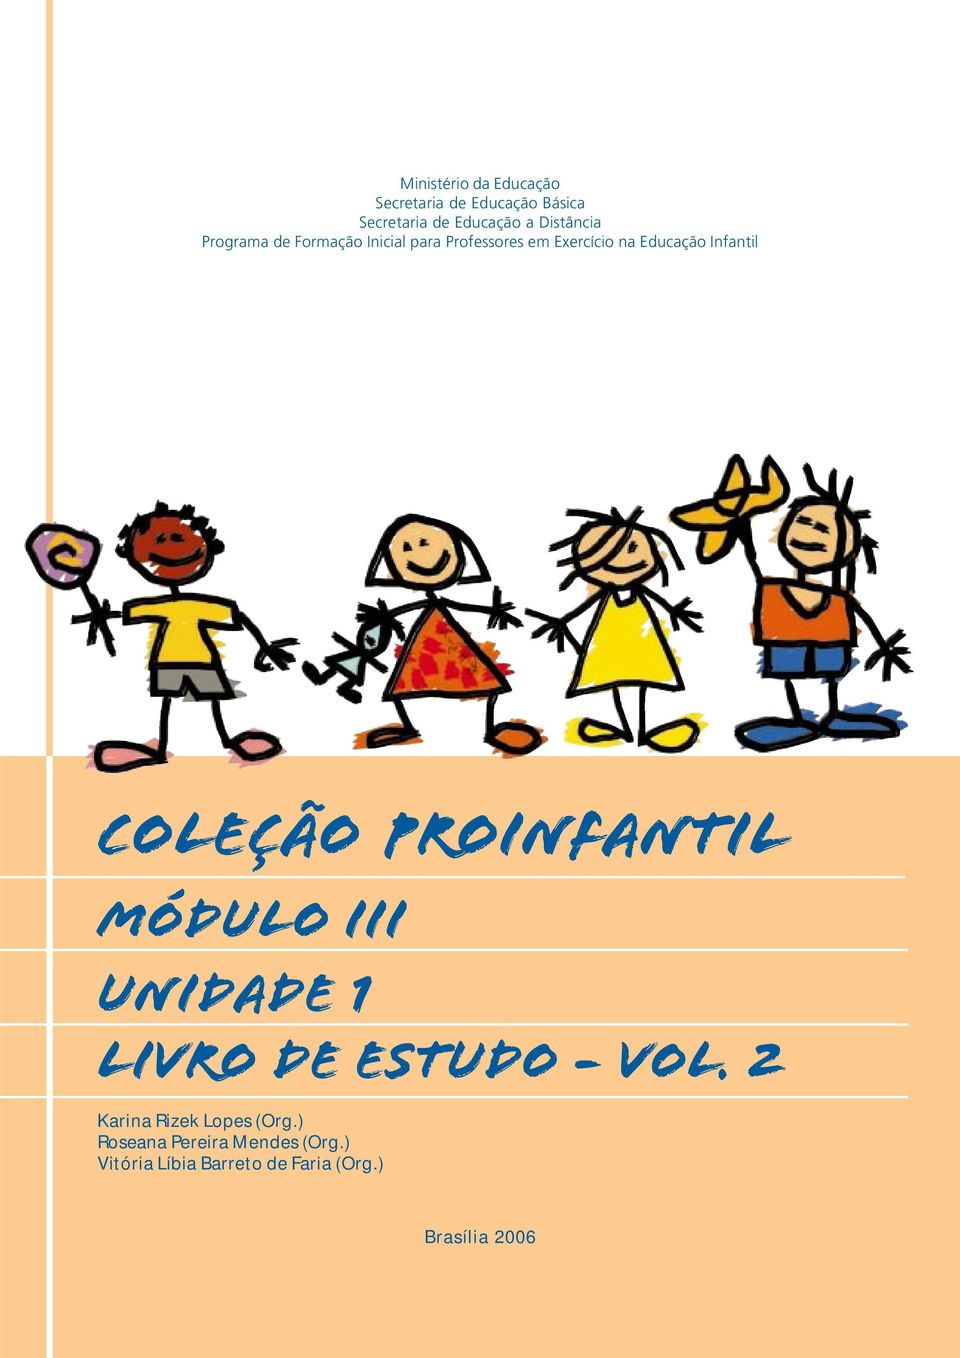 Infantil COLEÇÃO PROINFANTIL MÓDULO III unidade 1 livro de estudo - vol.